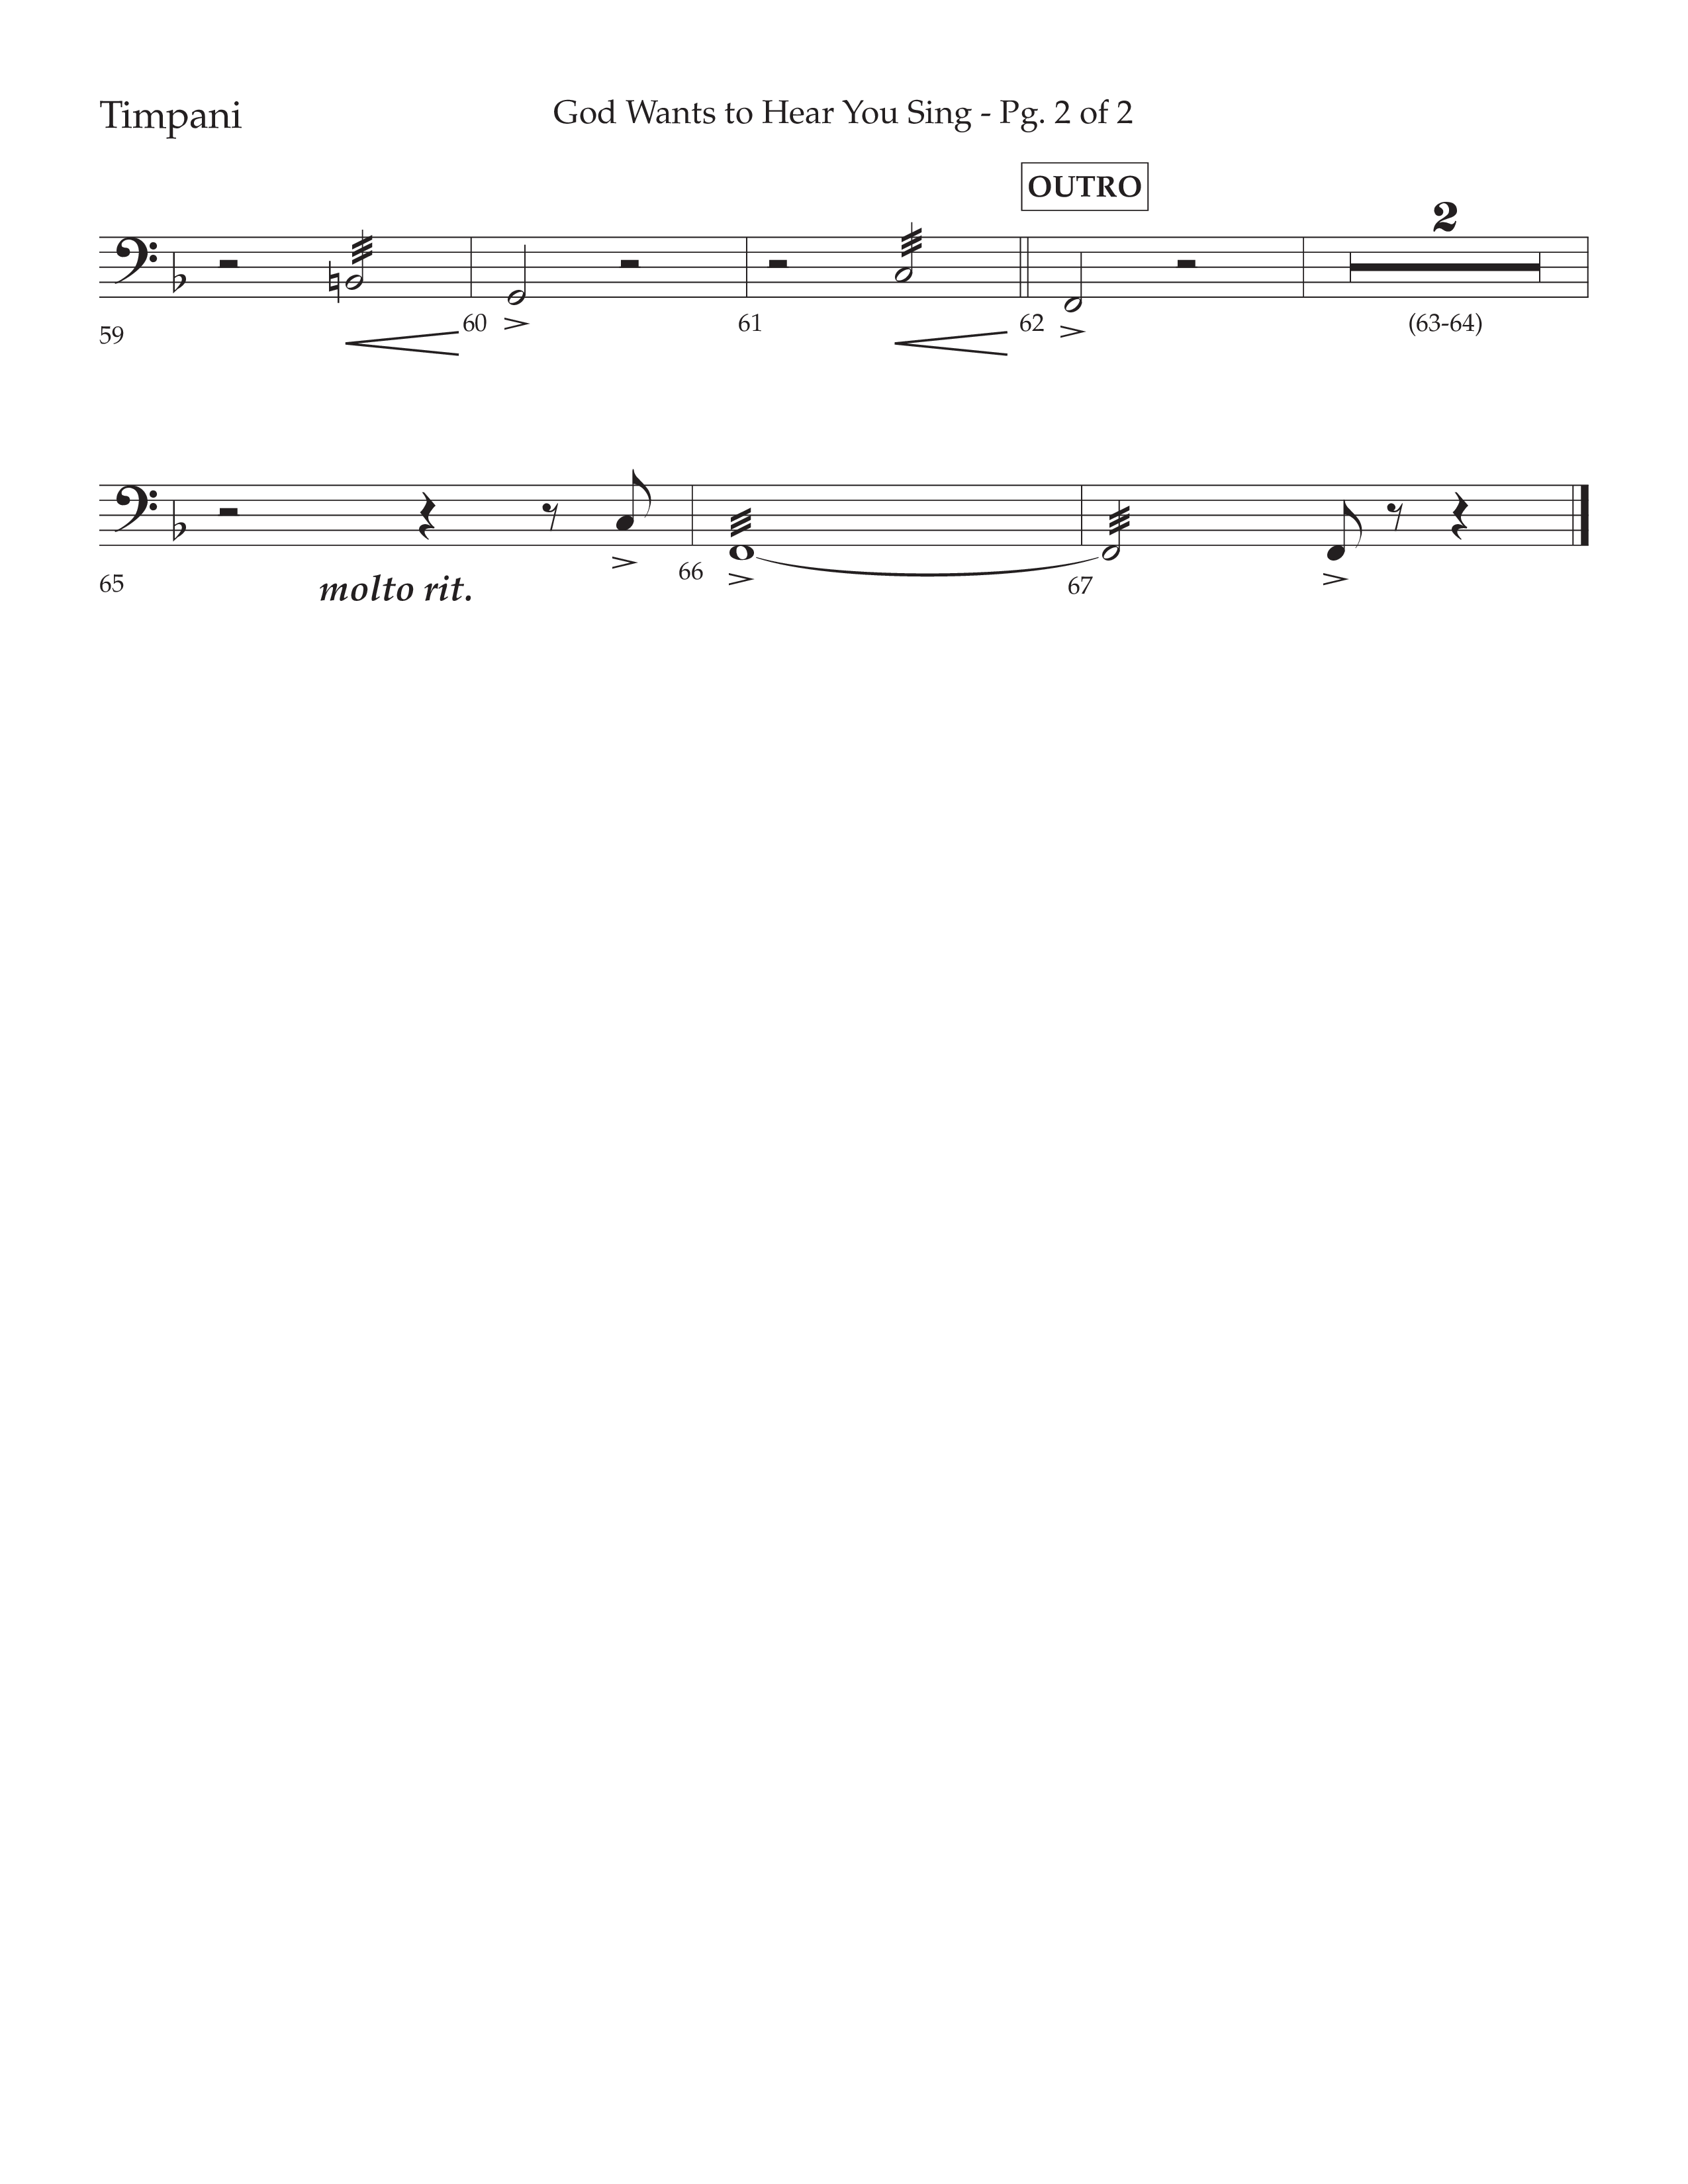 God Wants To Hear You Sing (Choral Anthem SATB) Timpani (Lifeway Choral / Arr. Bradley Knight)